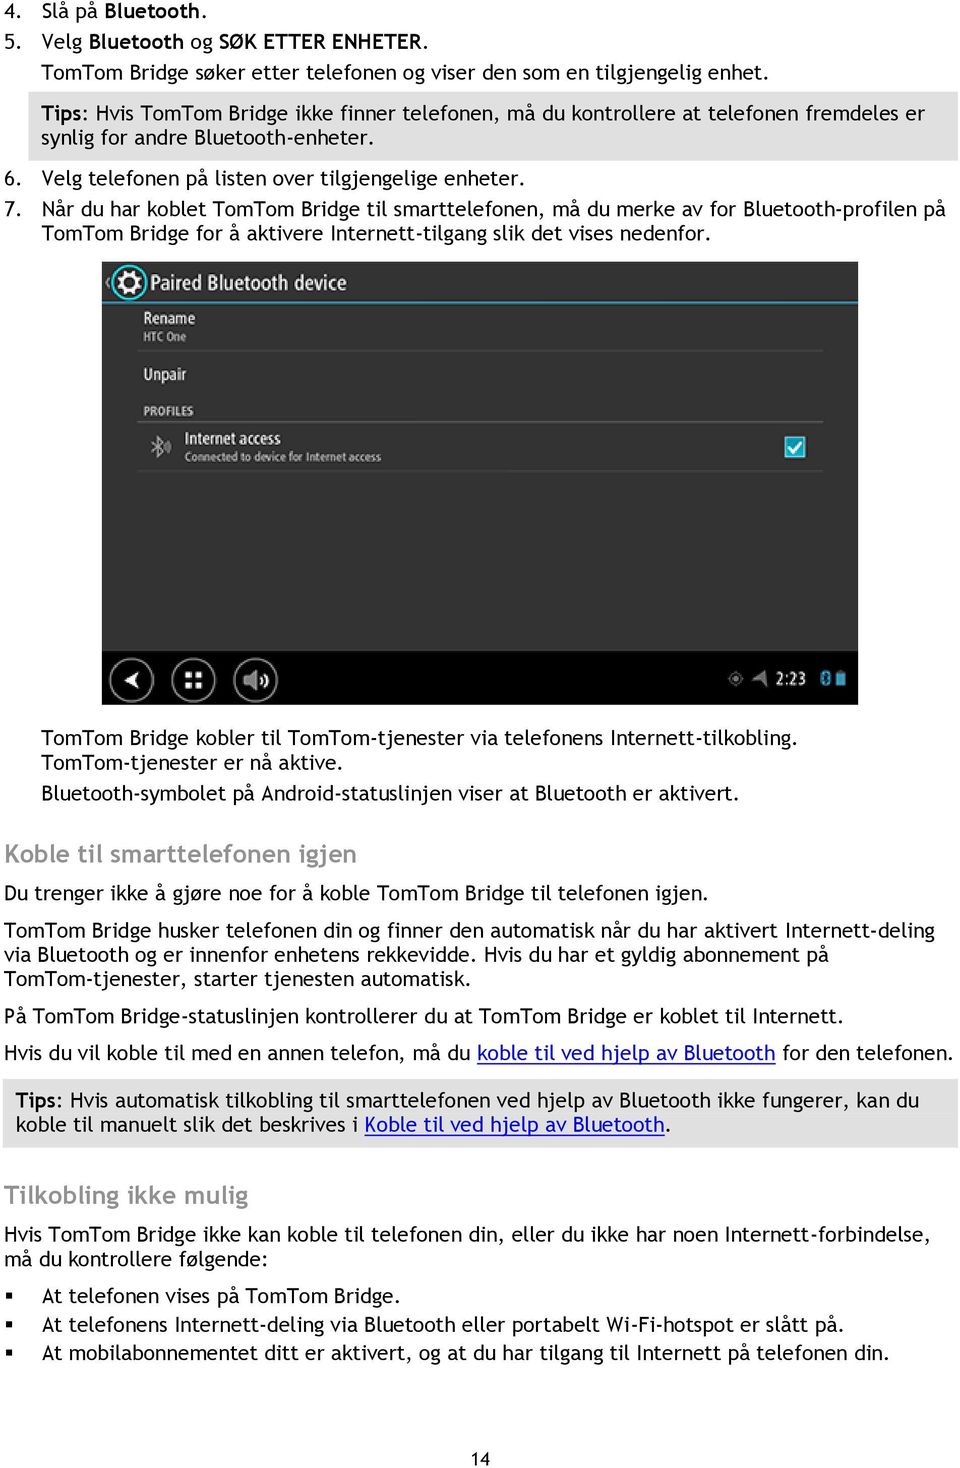 Når du har koblet TomTom Bridge til smarttelefonen, må du merke av for Bluetooth-profilen på TomTom Bridge for å aktivere Internett-tilgang slik det vises nedenfor.